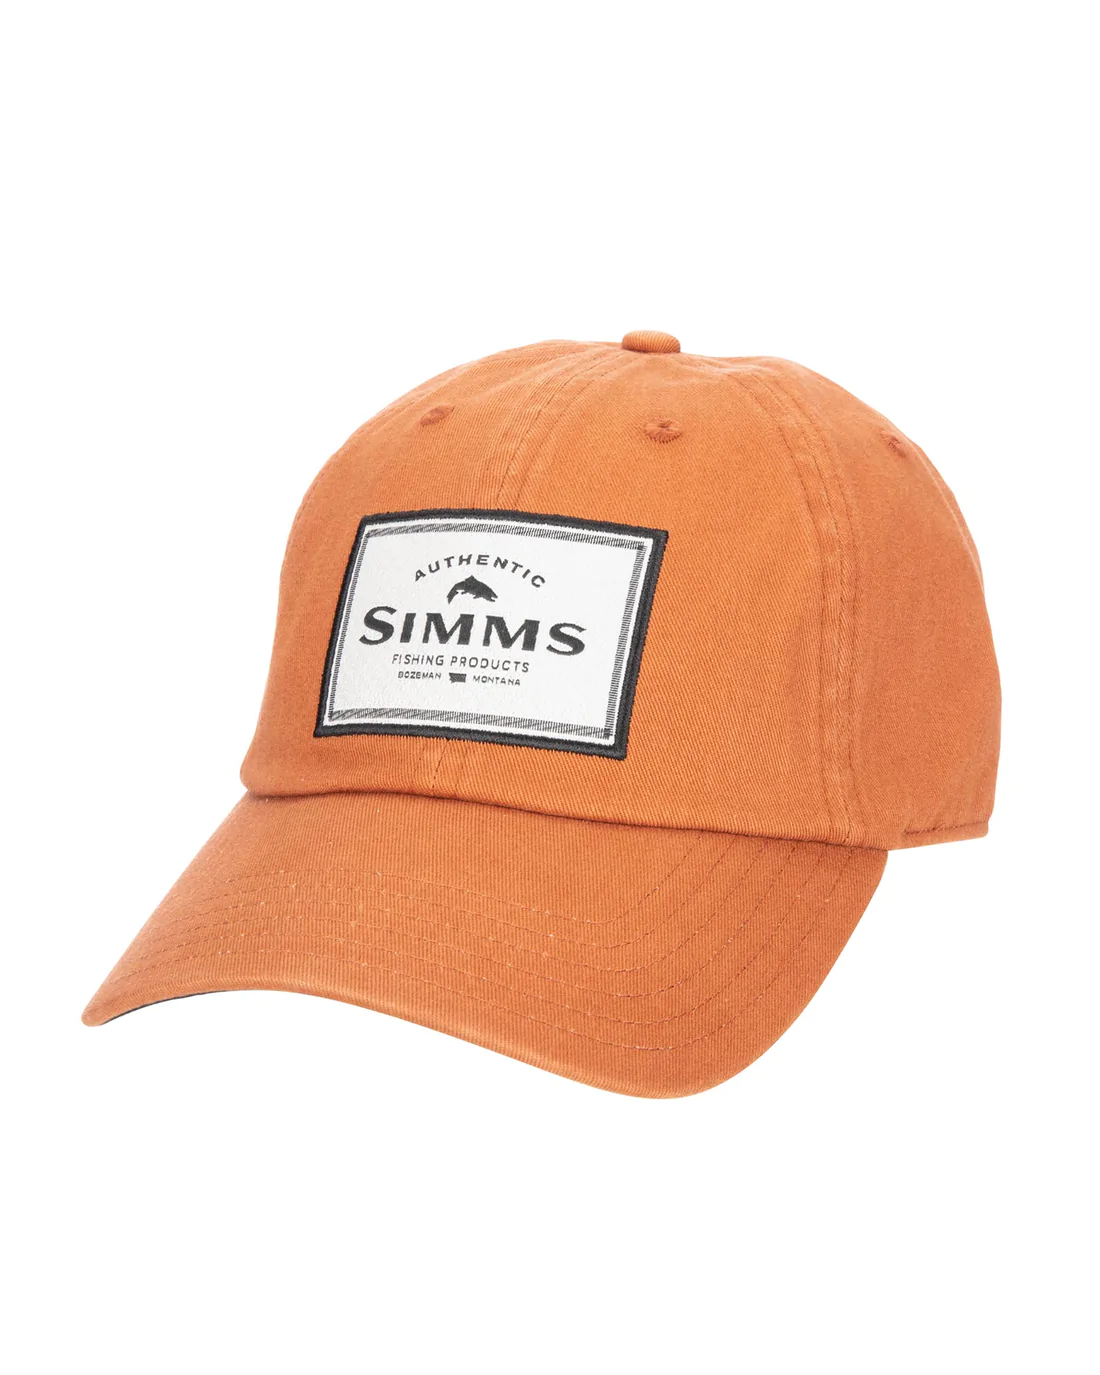 SINGLE HAUL CAP Simms Orange